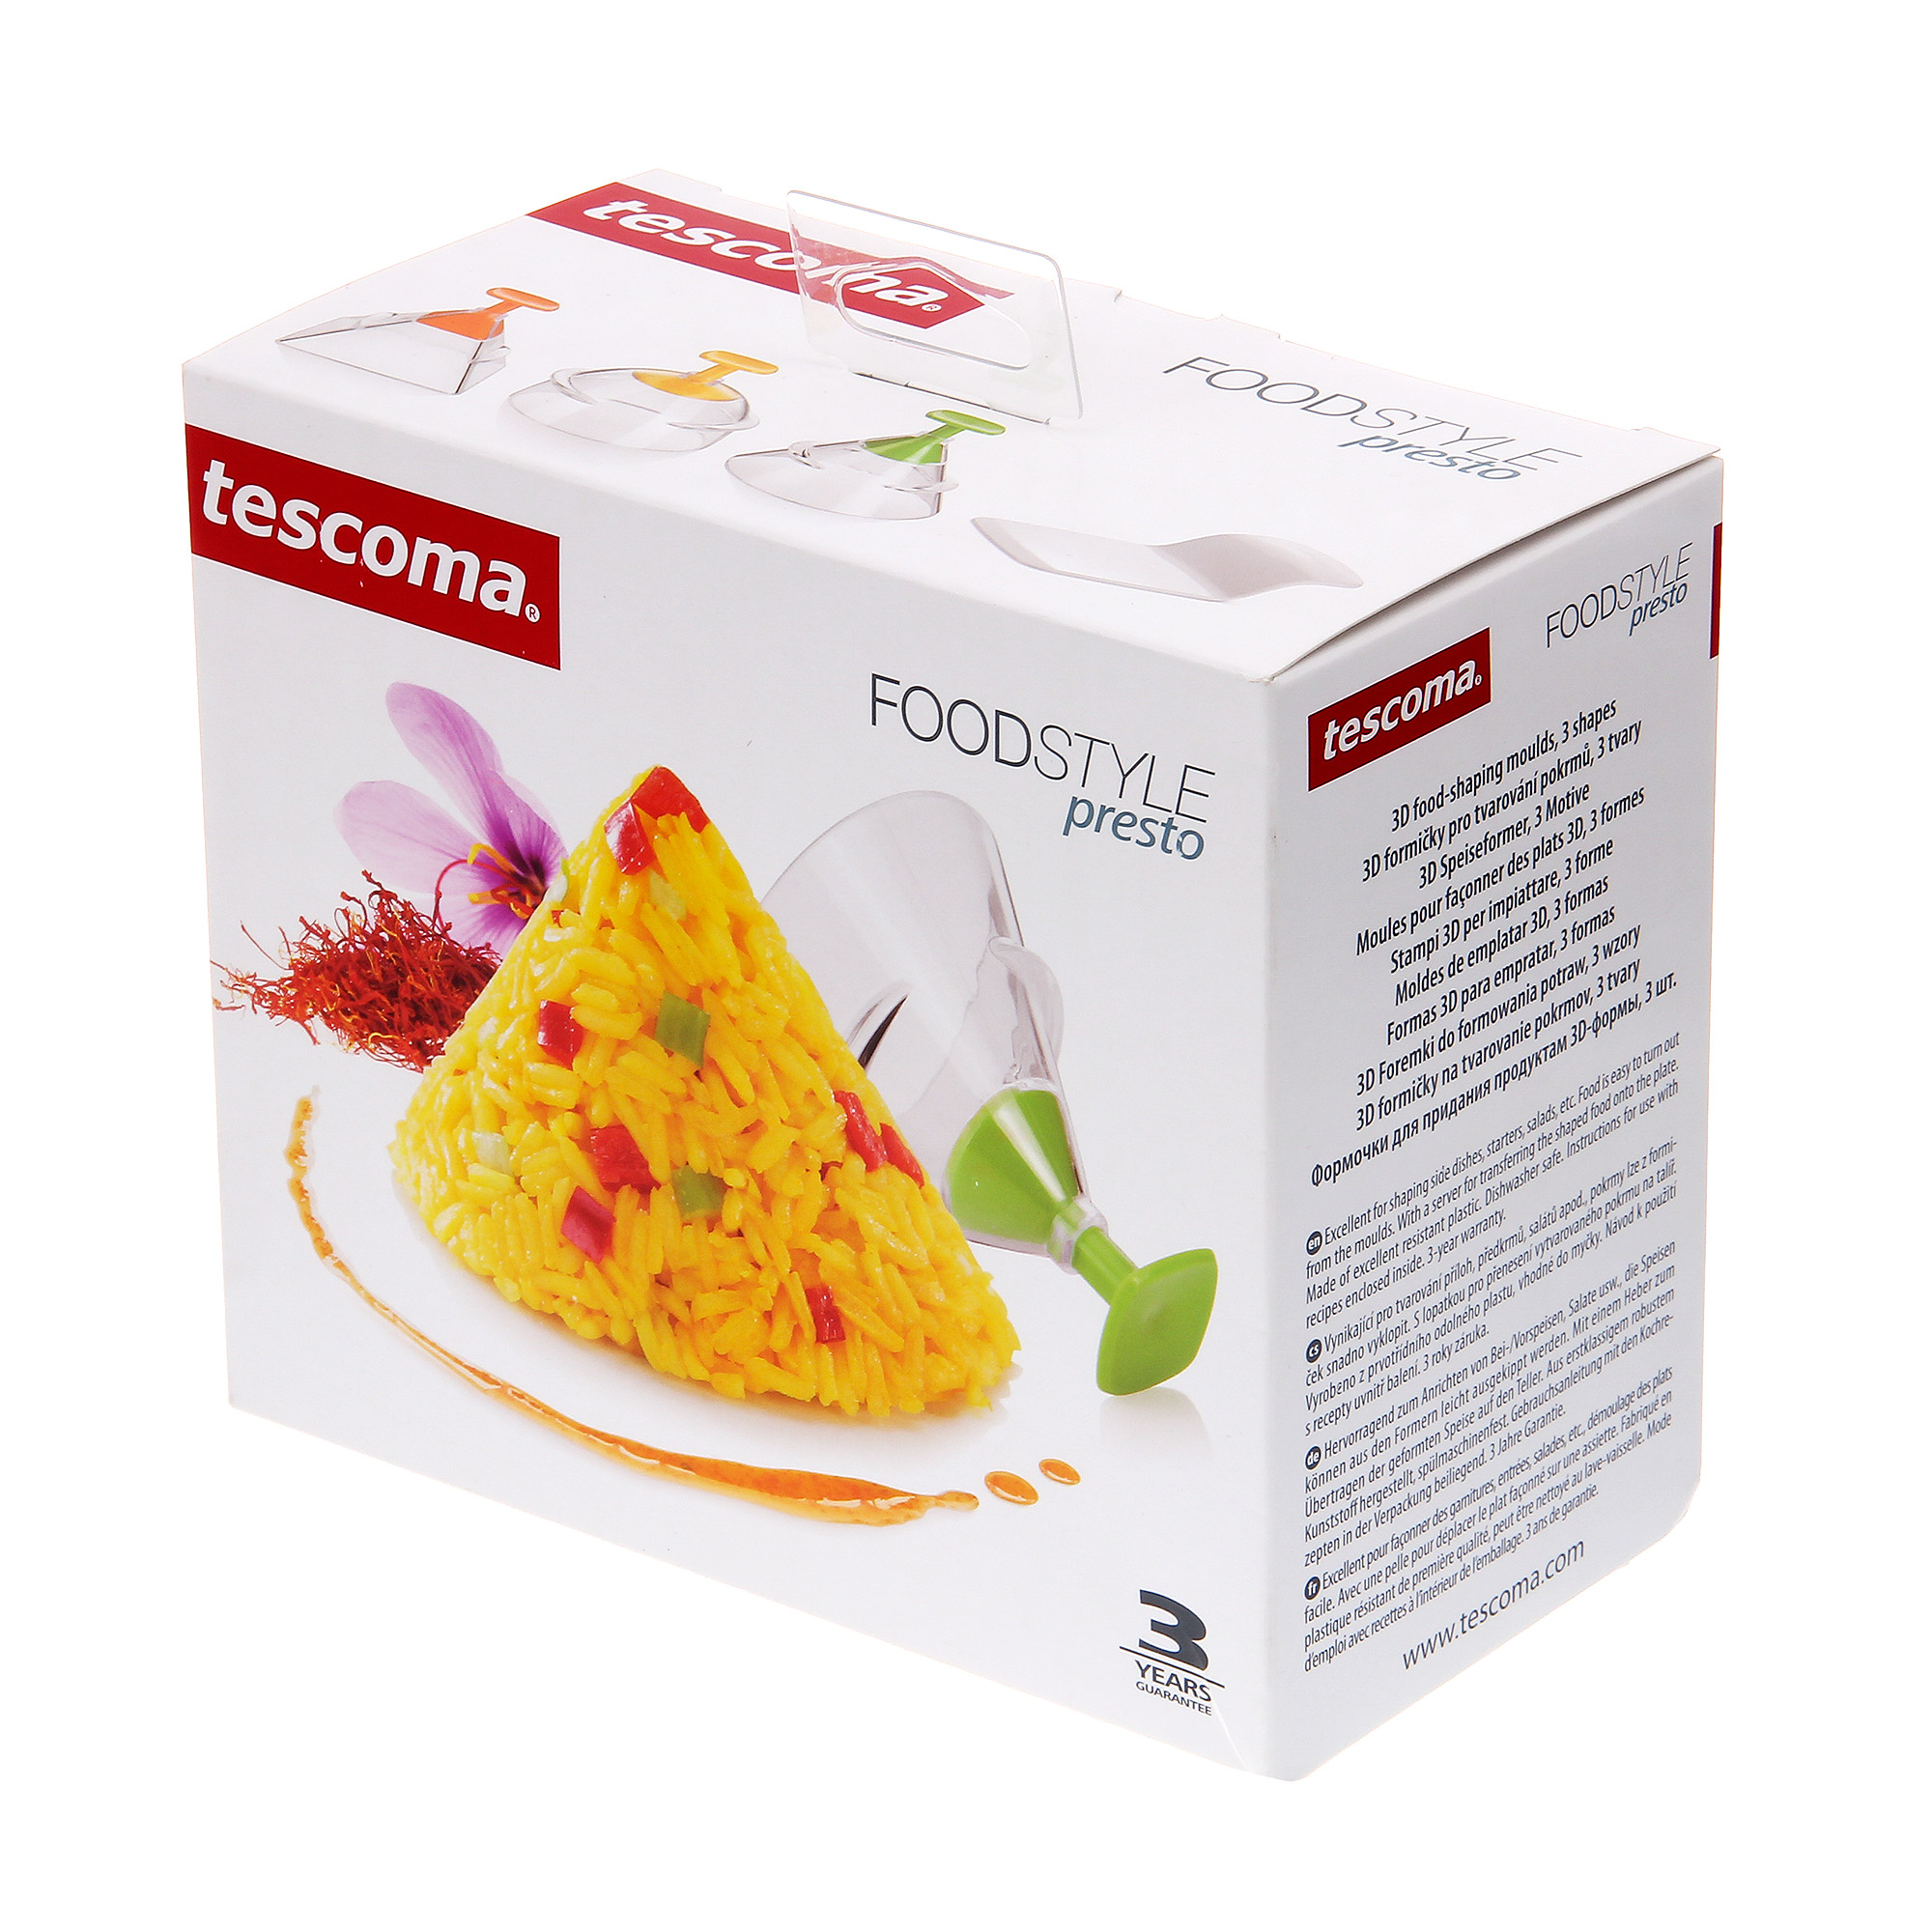 Формочки для придания продуктам 3d-формы Tescoma  presto foodstyle, 3 шт - фото 4